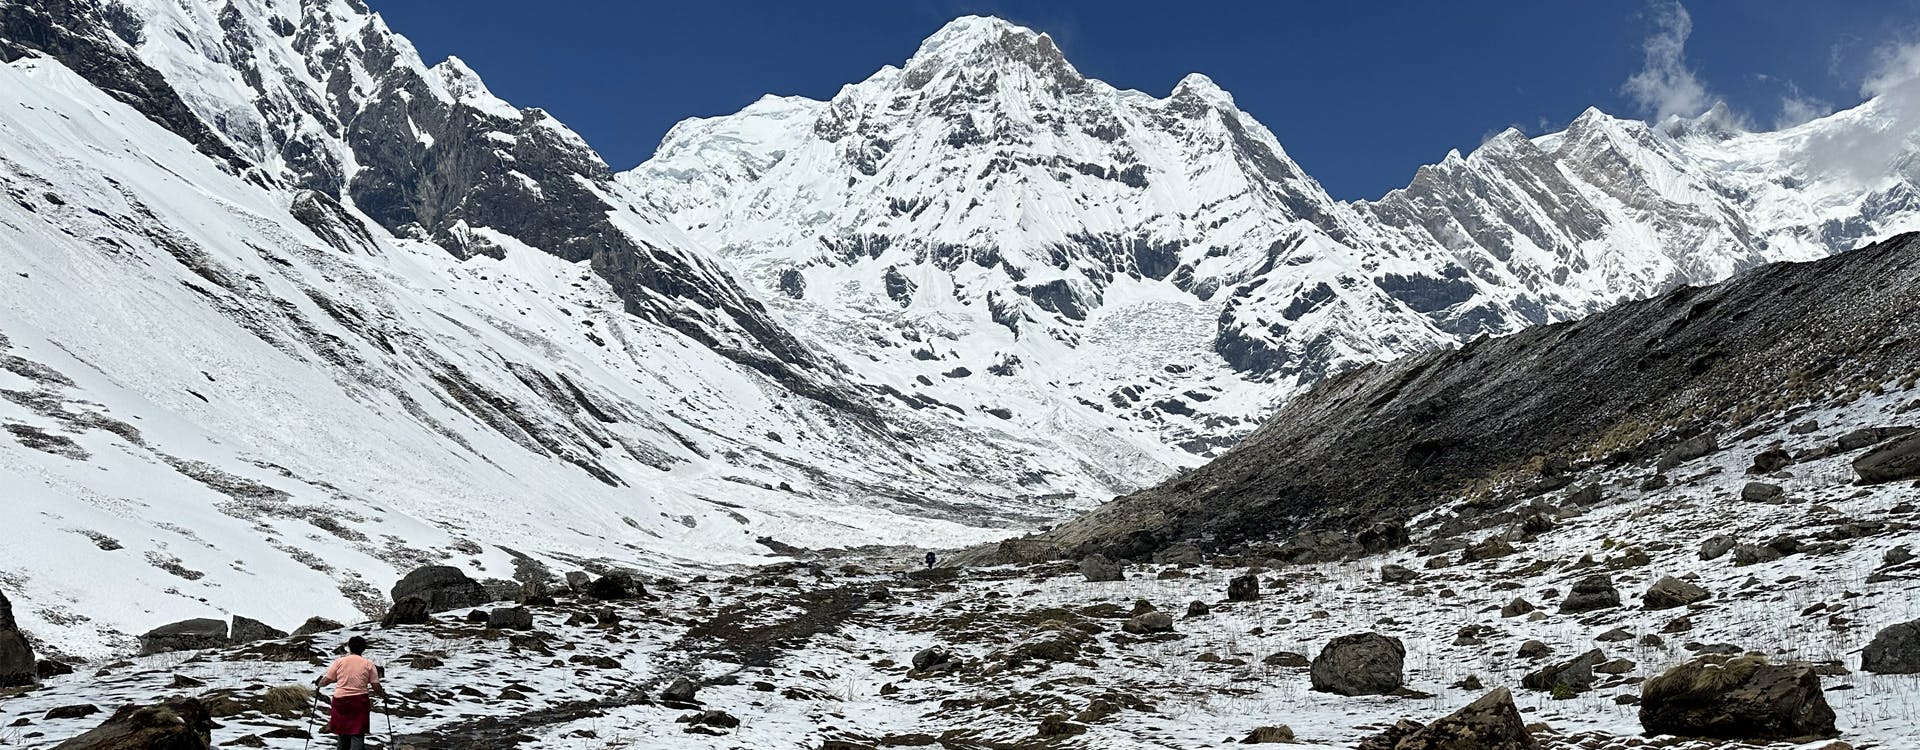 The History of Trekking in Annapurna